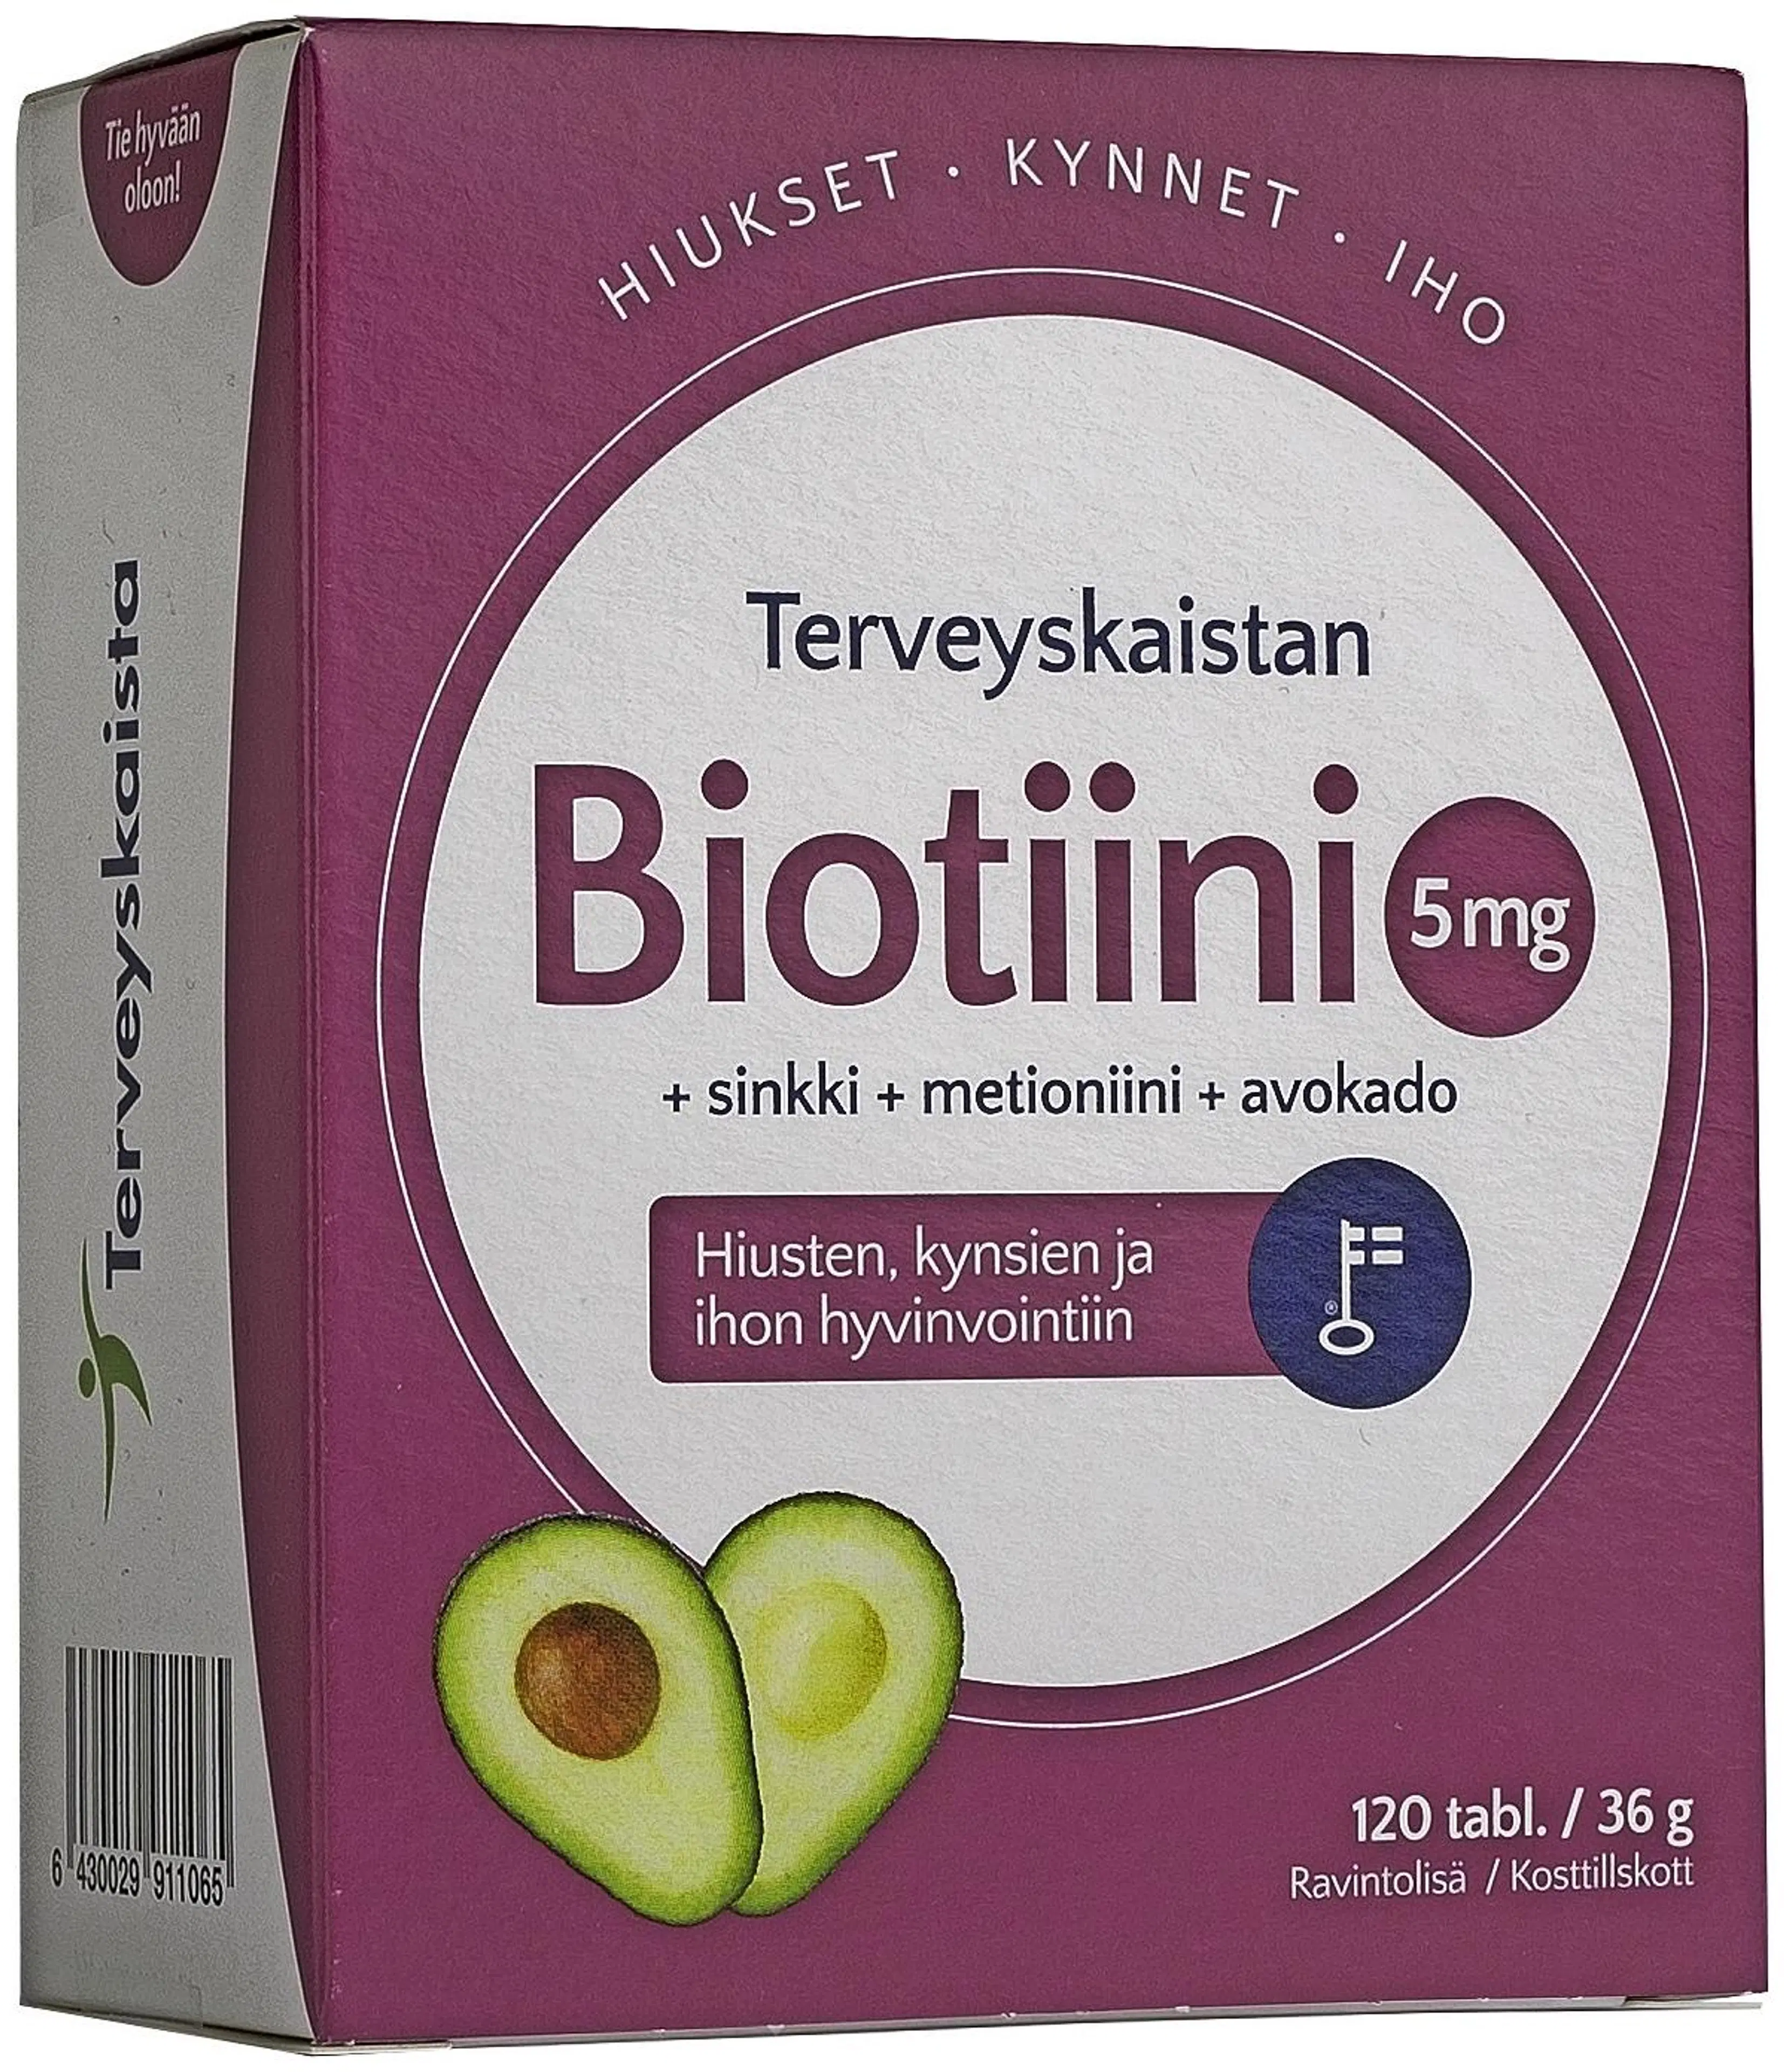 Terveyskaistan Biotiini 5 mg + sinkki + metioniini + avokado ravintolisä 120 tabl.